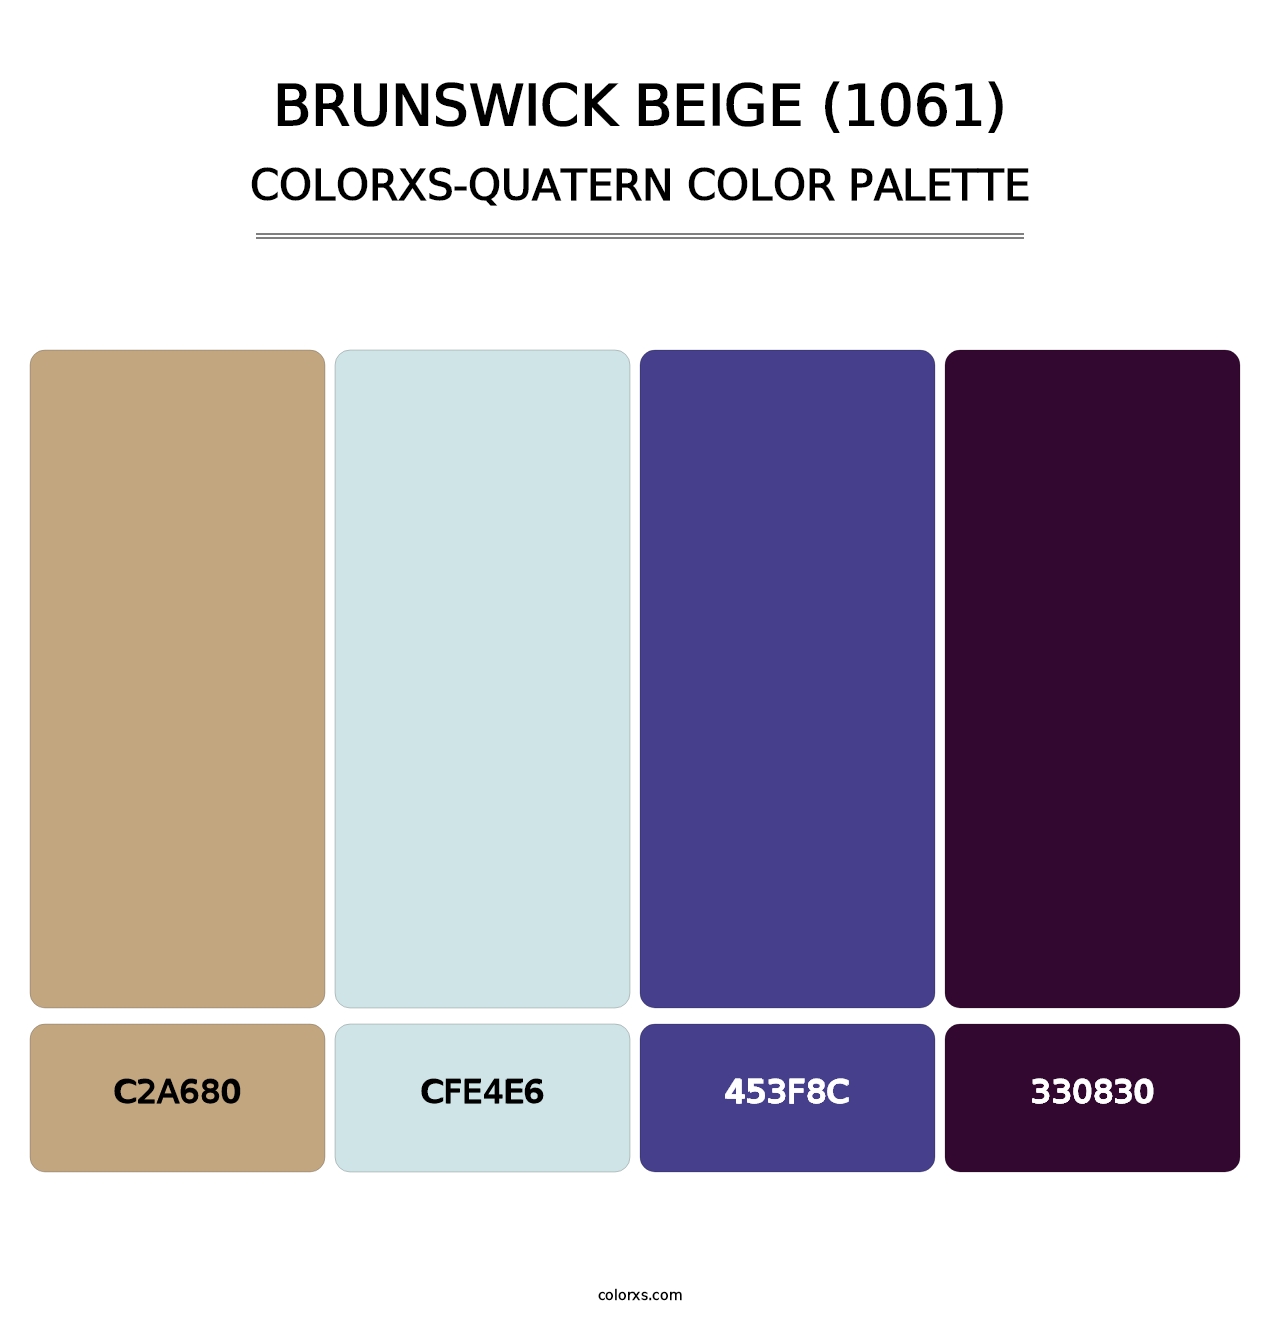 Brunswick Beige (1061) - Colorxs Quatern Palette